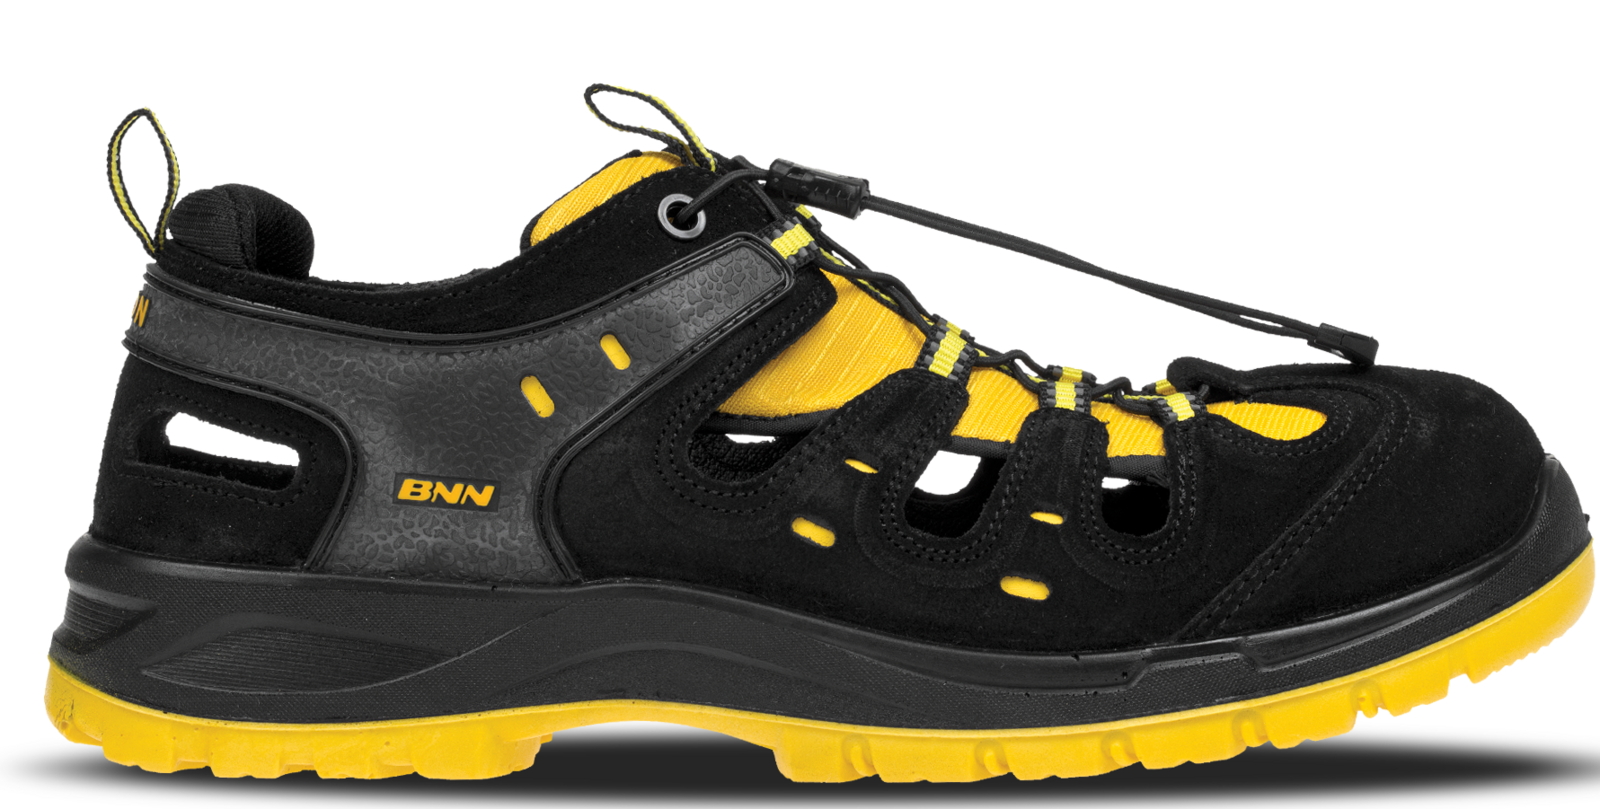 Bezpečnostné sandále Bombis lite NM S1 - veľkosť: 48, farba: žltá